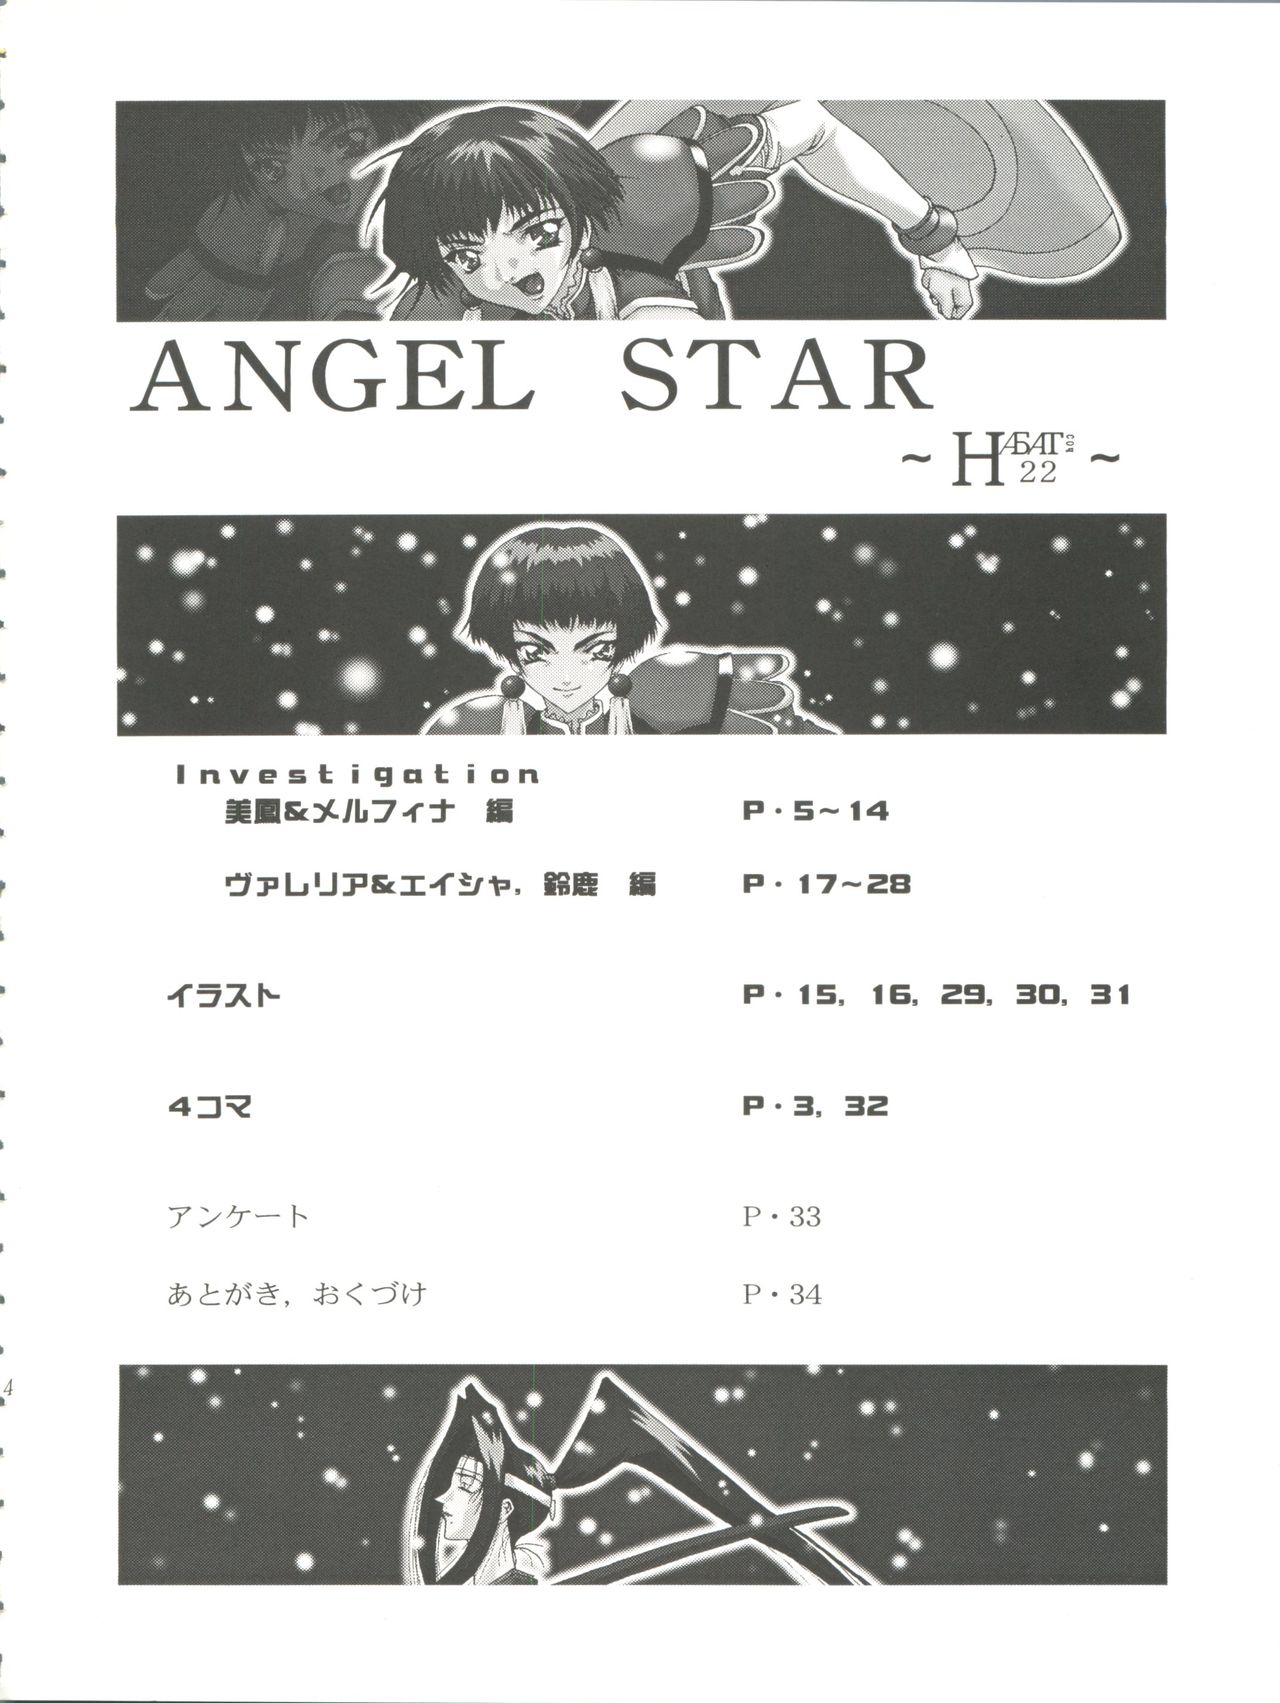 (SC4) [F.A (Honoutsukai)] Habat coy 22 - Angel Star (Angel Links, Outlaw Star) (サンクリ4) [F・A (炎使)] HAБAT coy 22 - ANGEL STAR (星方天使エンジェルリンクス、星方武侠アウトロースター)